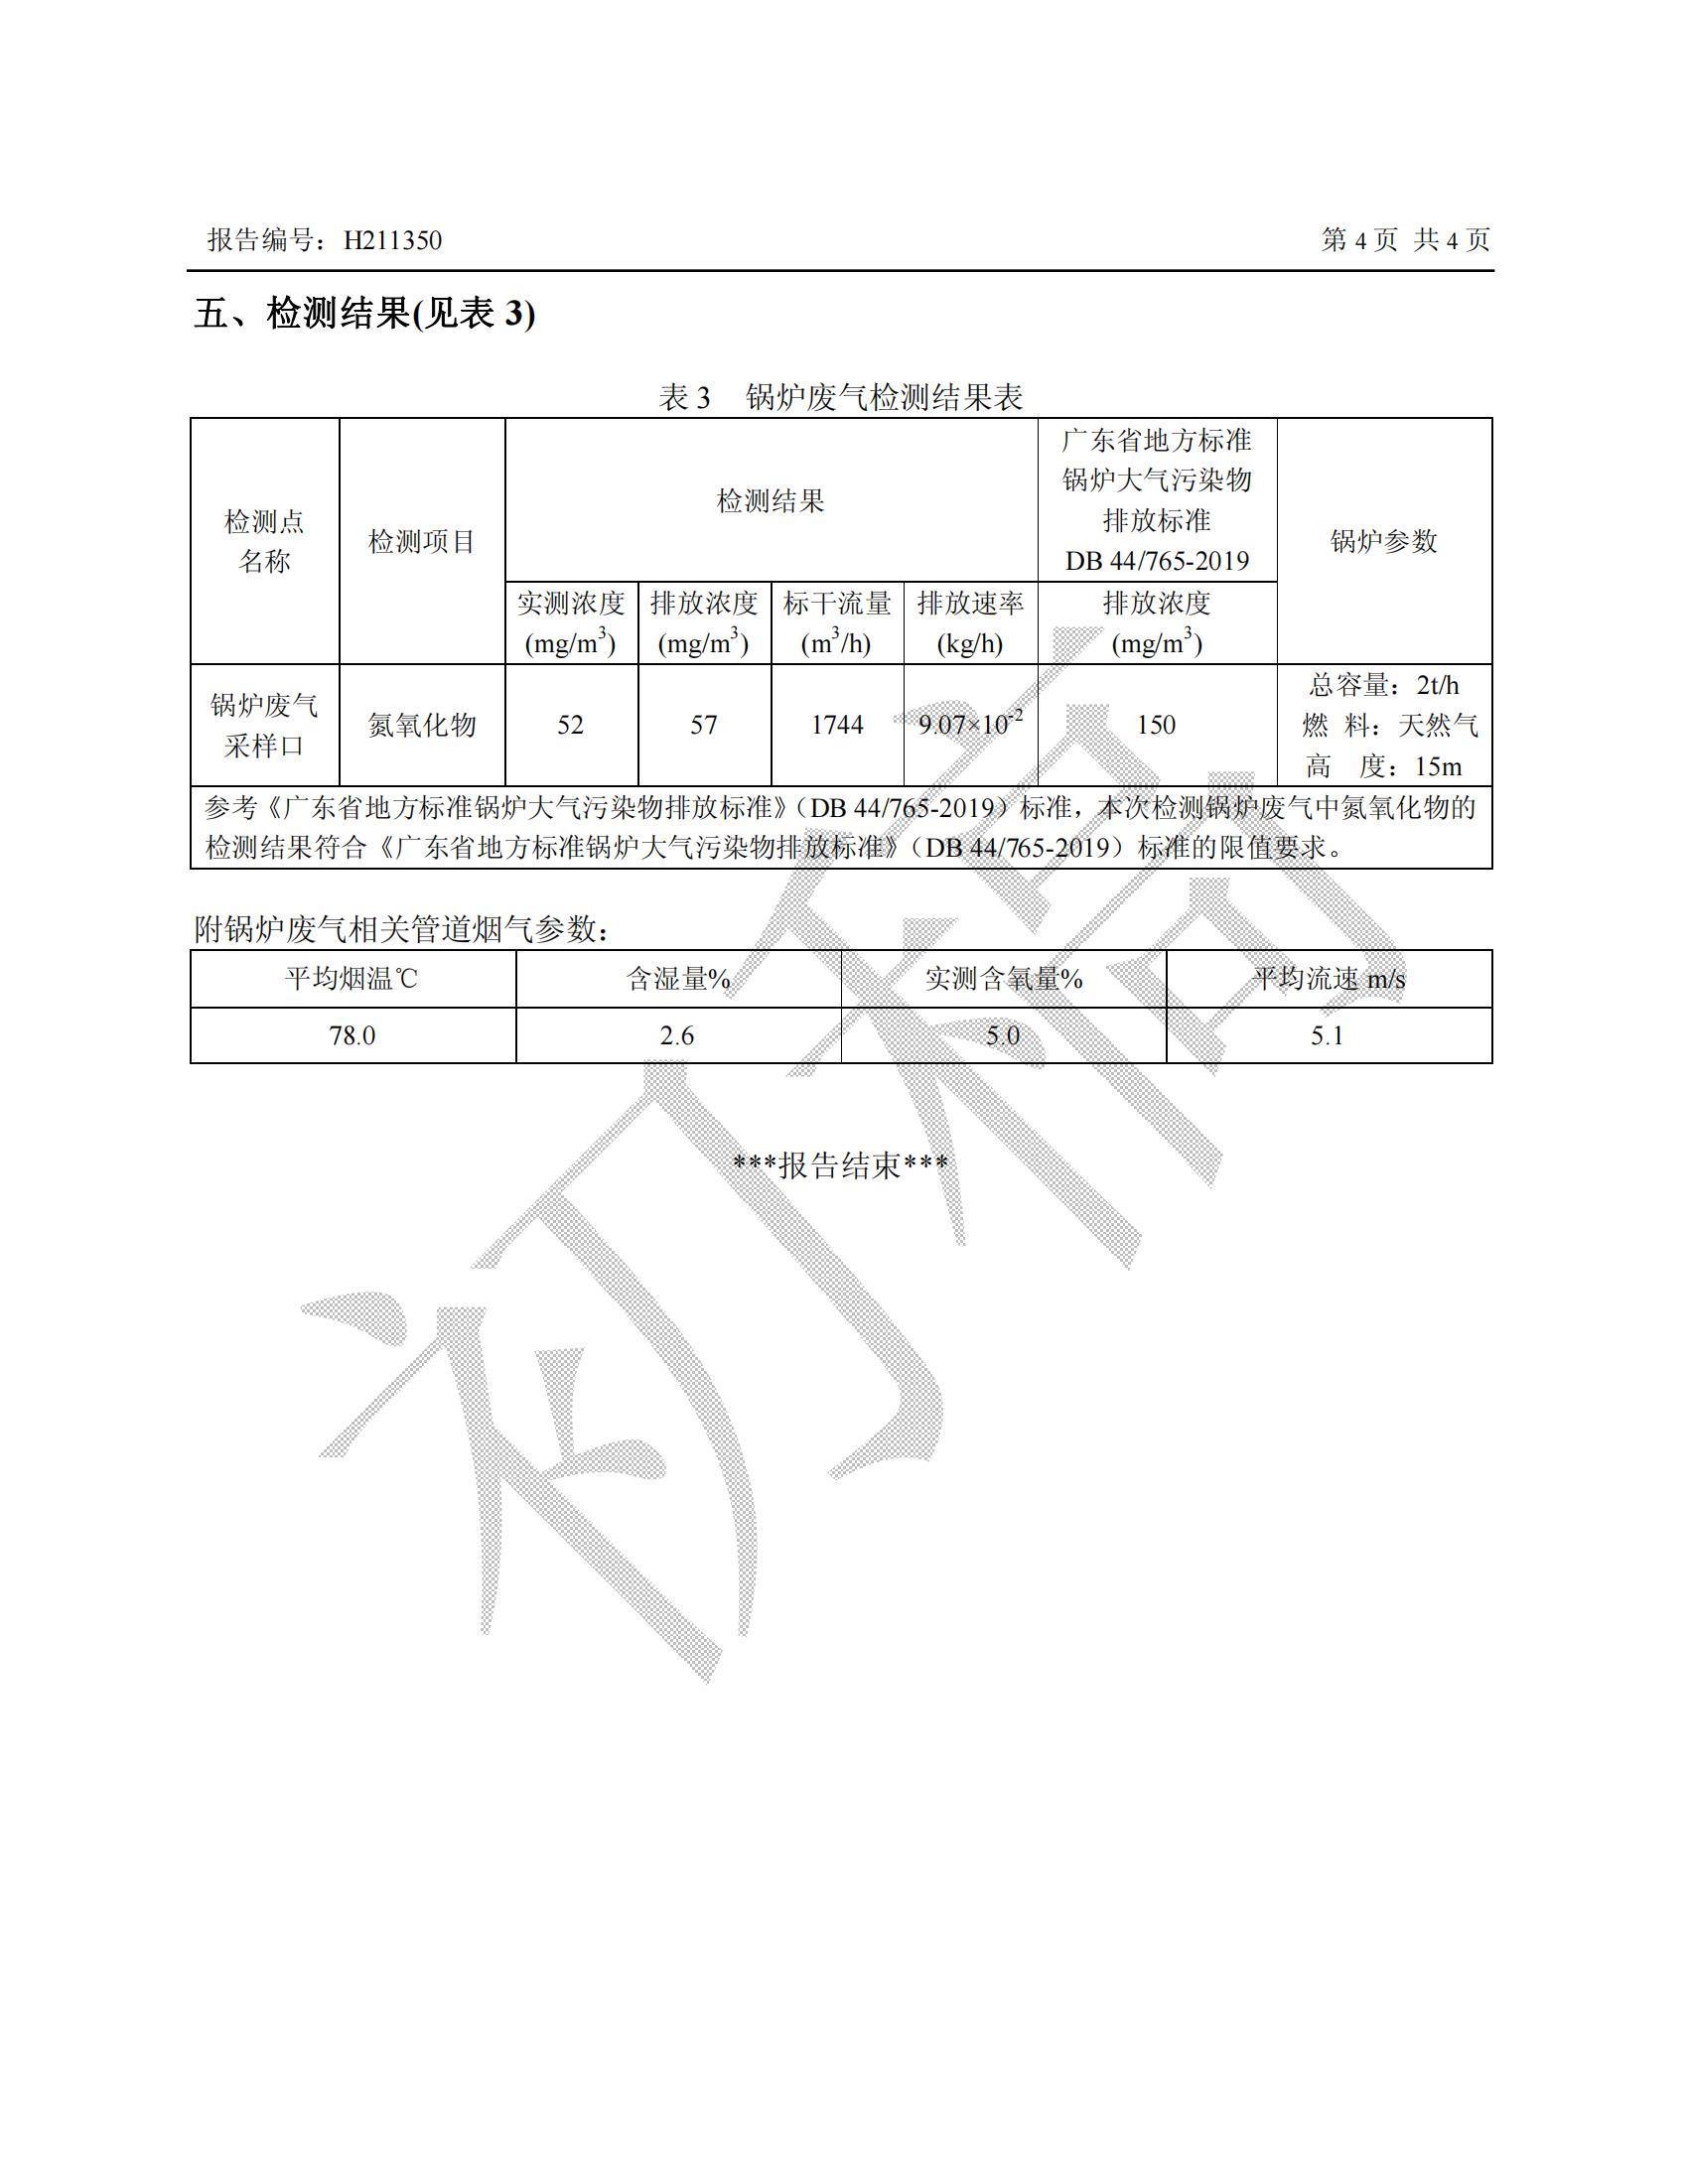 12月锅炉废气监测报告（南山总部）(1)_03